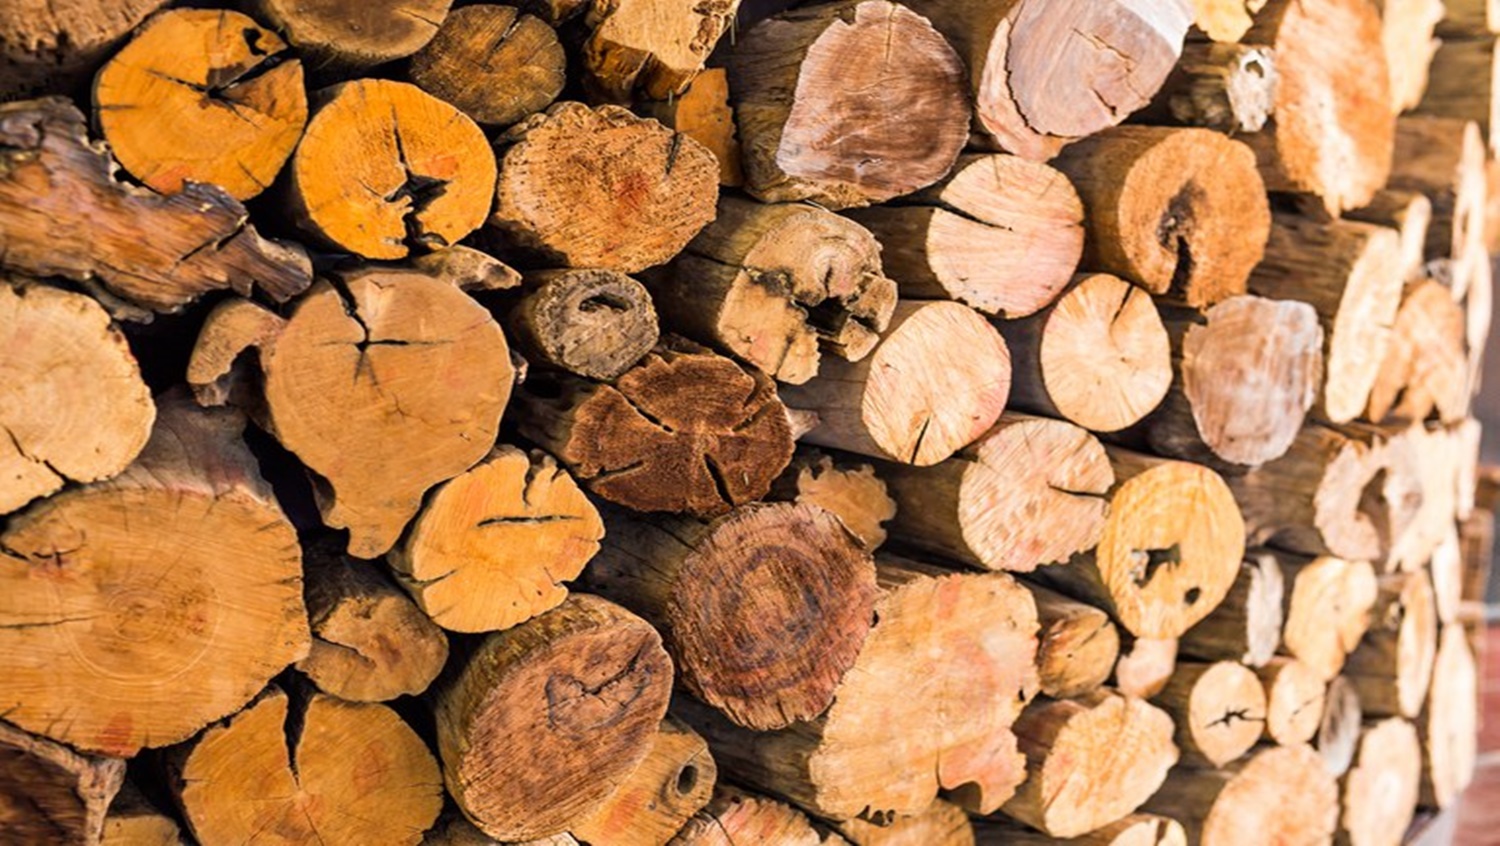 ÁRVORES: Sistema do SFB auxilia a identificar espécies de madeira florestal